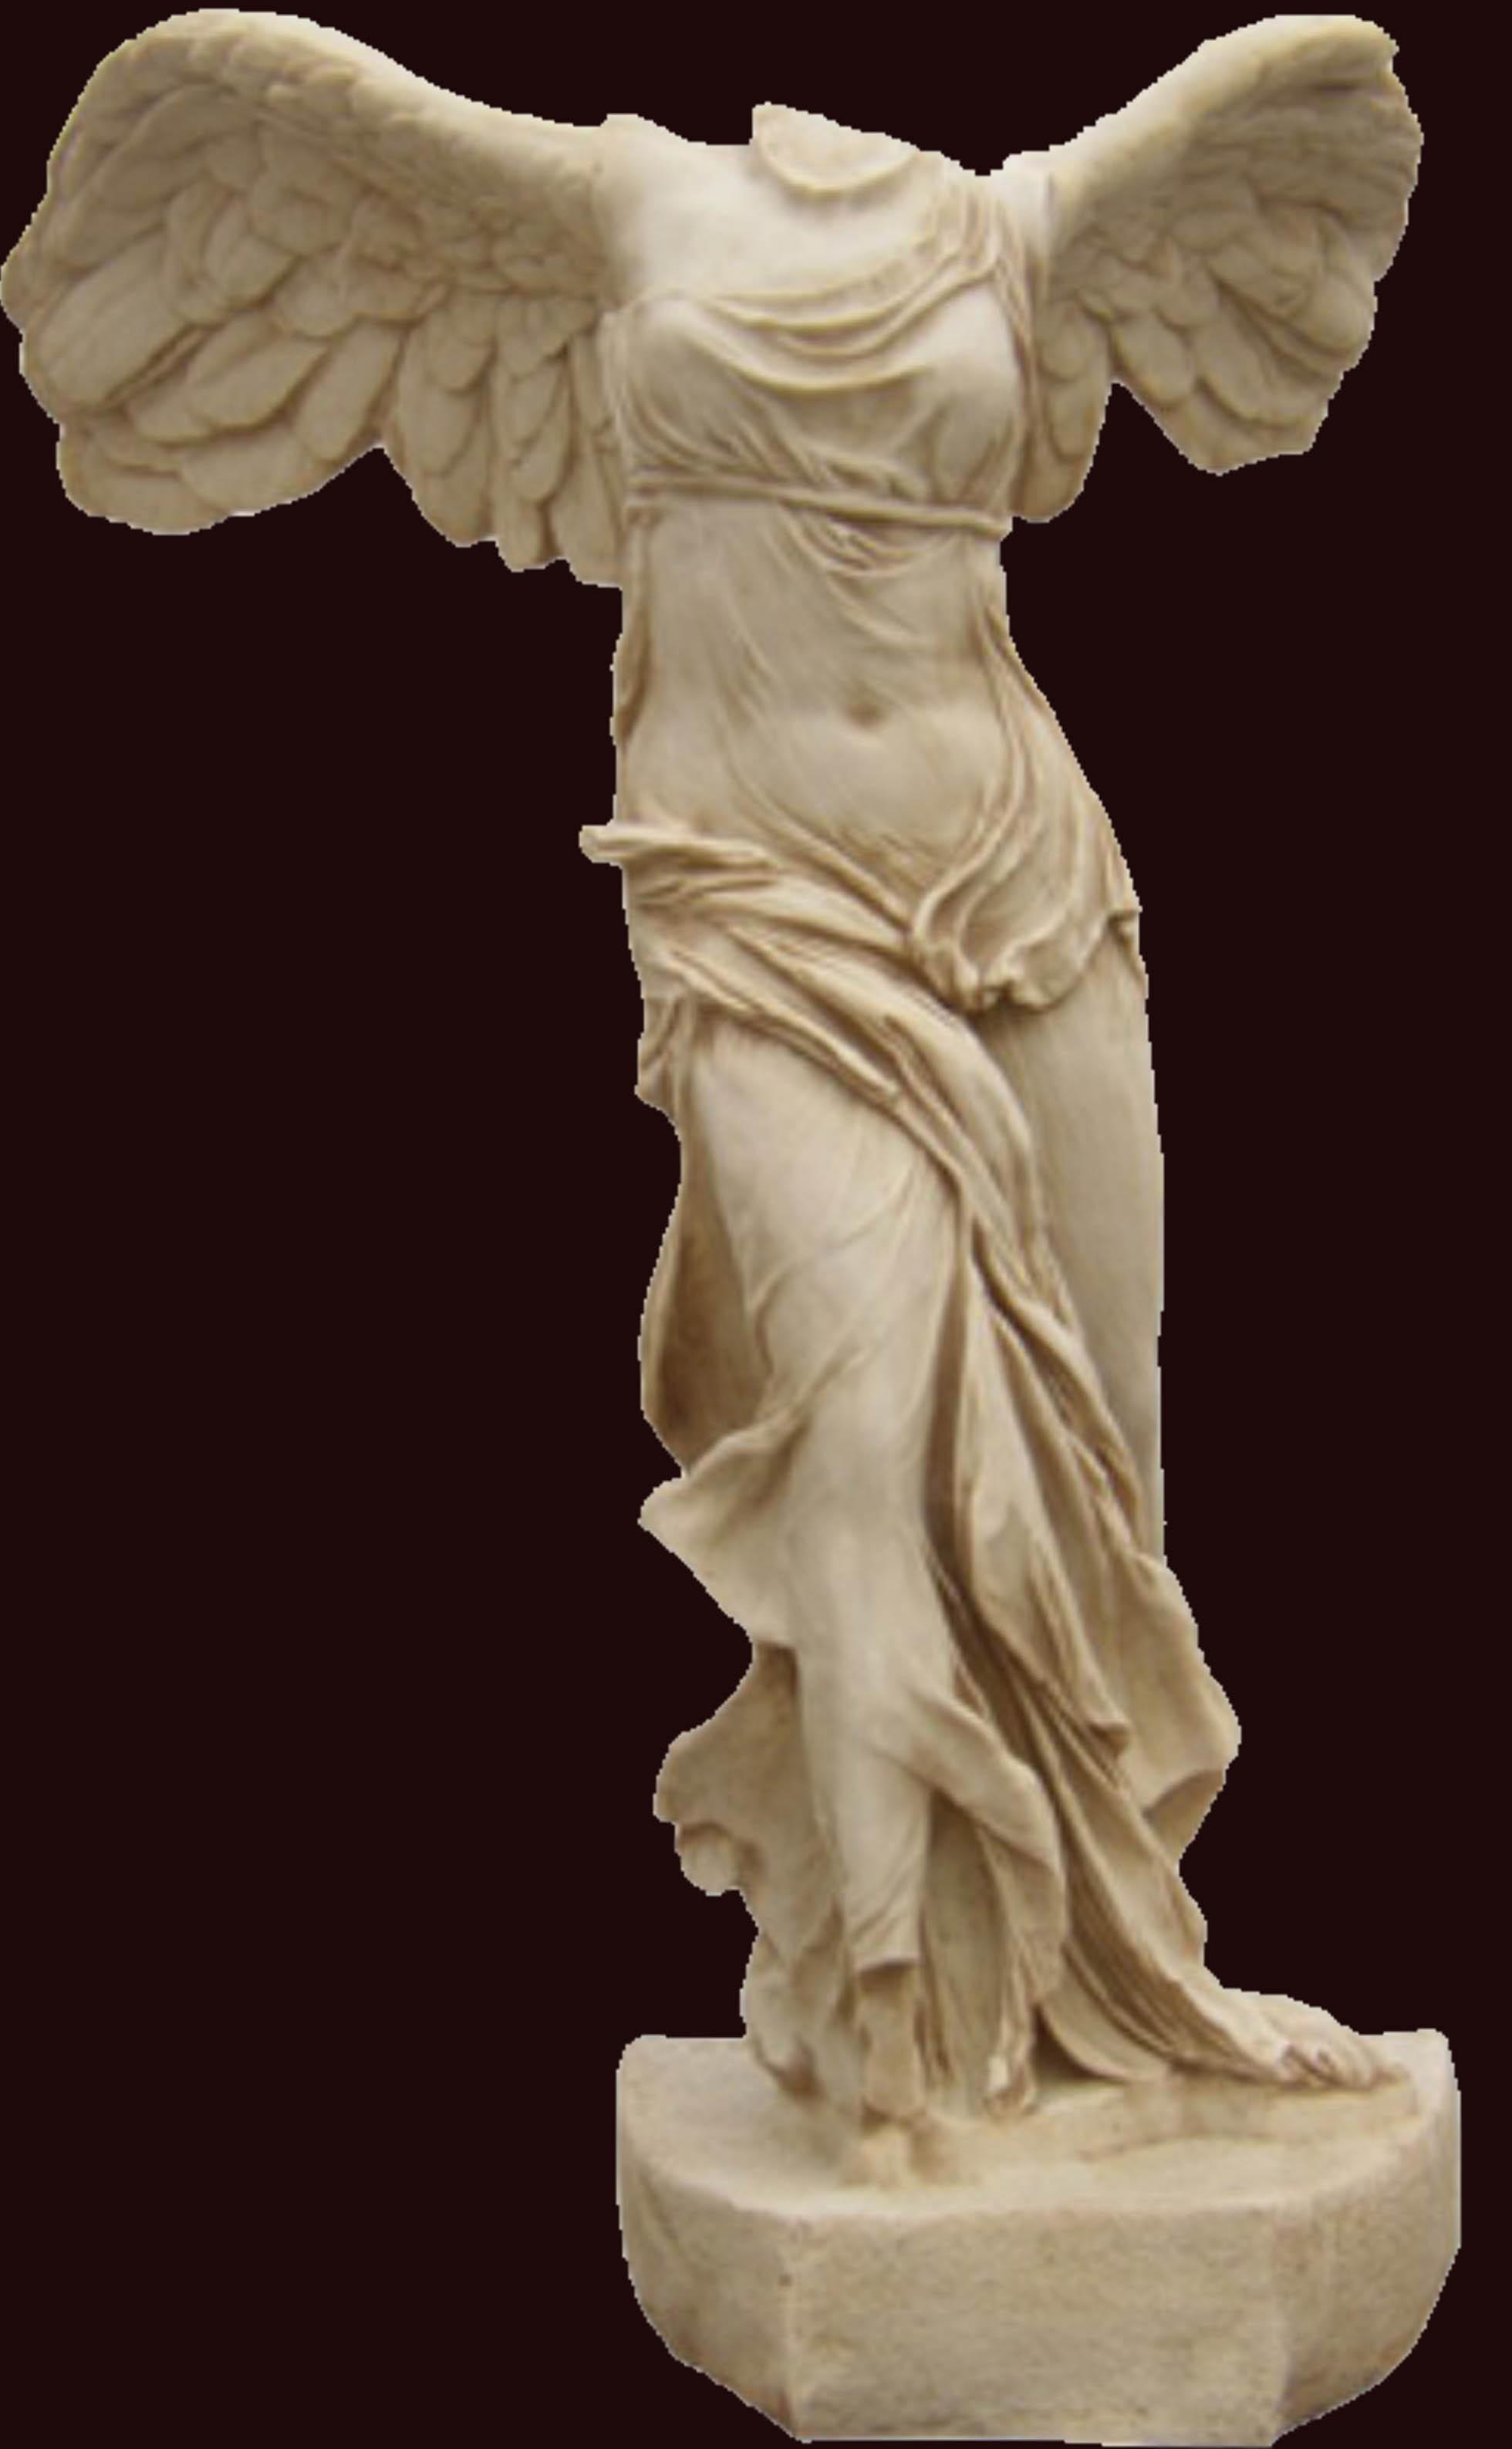 【开天雅典娜雕像】重现雅典娜之美 - 知乎